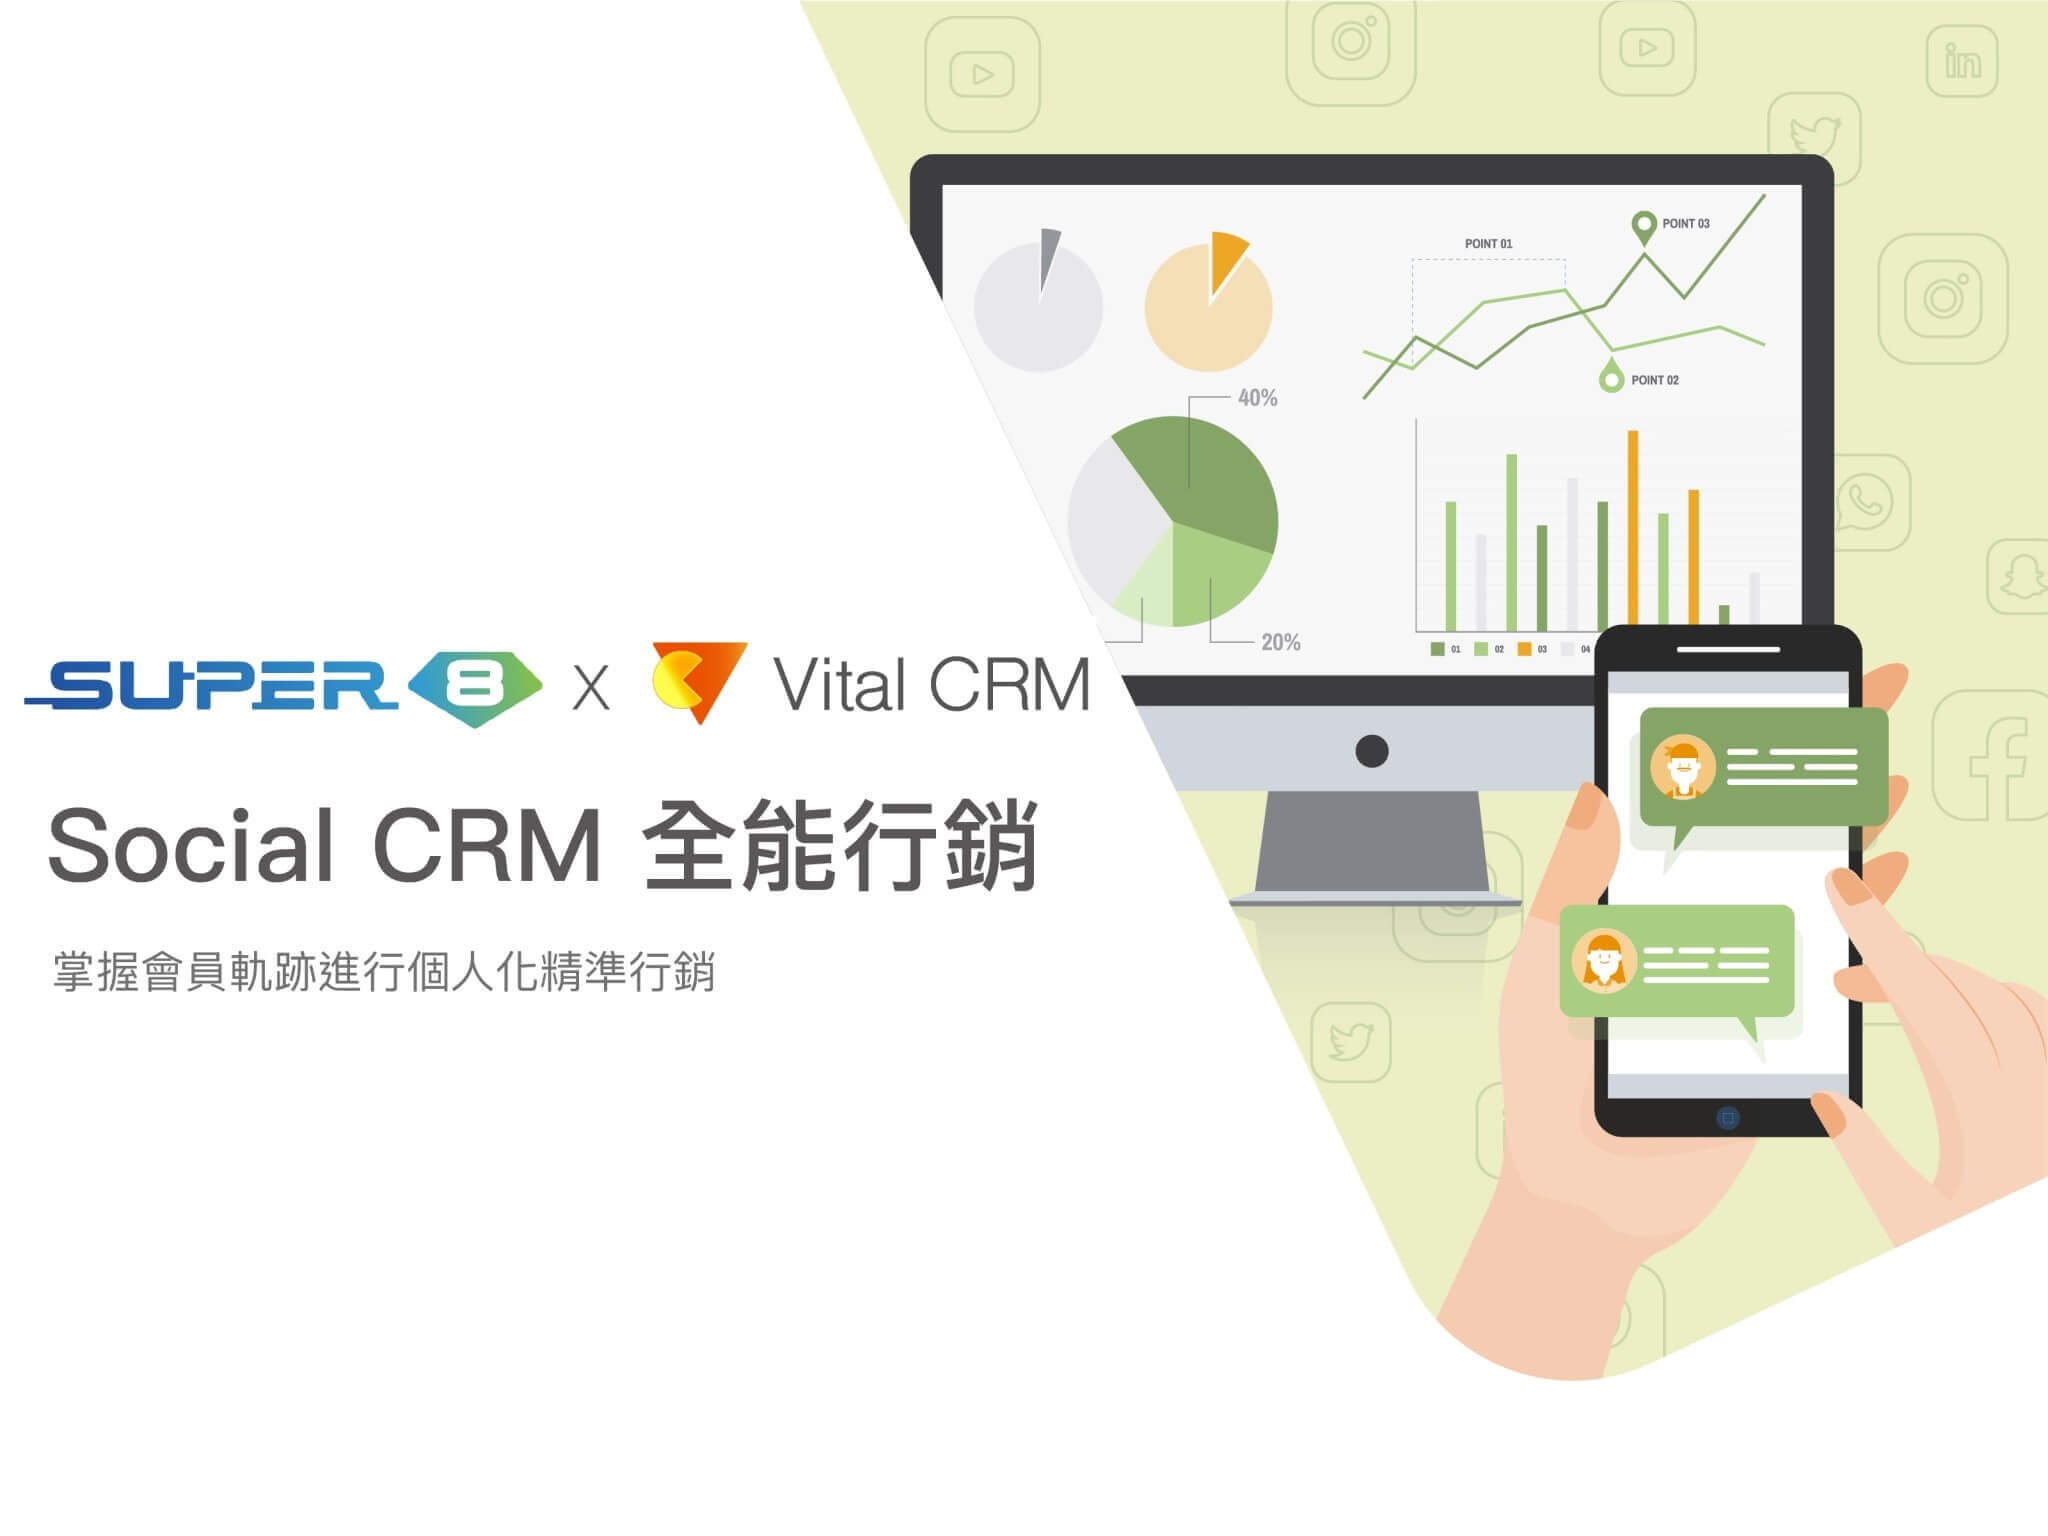 善用Social CRM行銷科技將有助於企業整合多元管道的會員資料同時有效激發其消費力